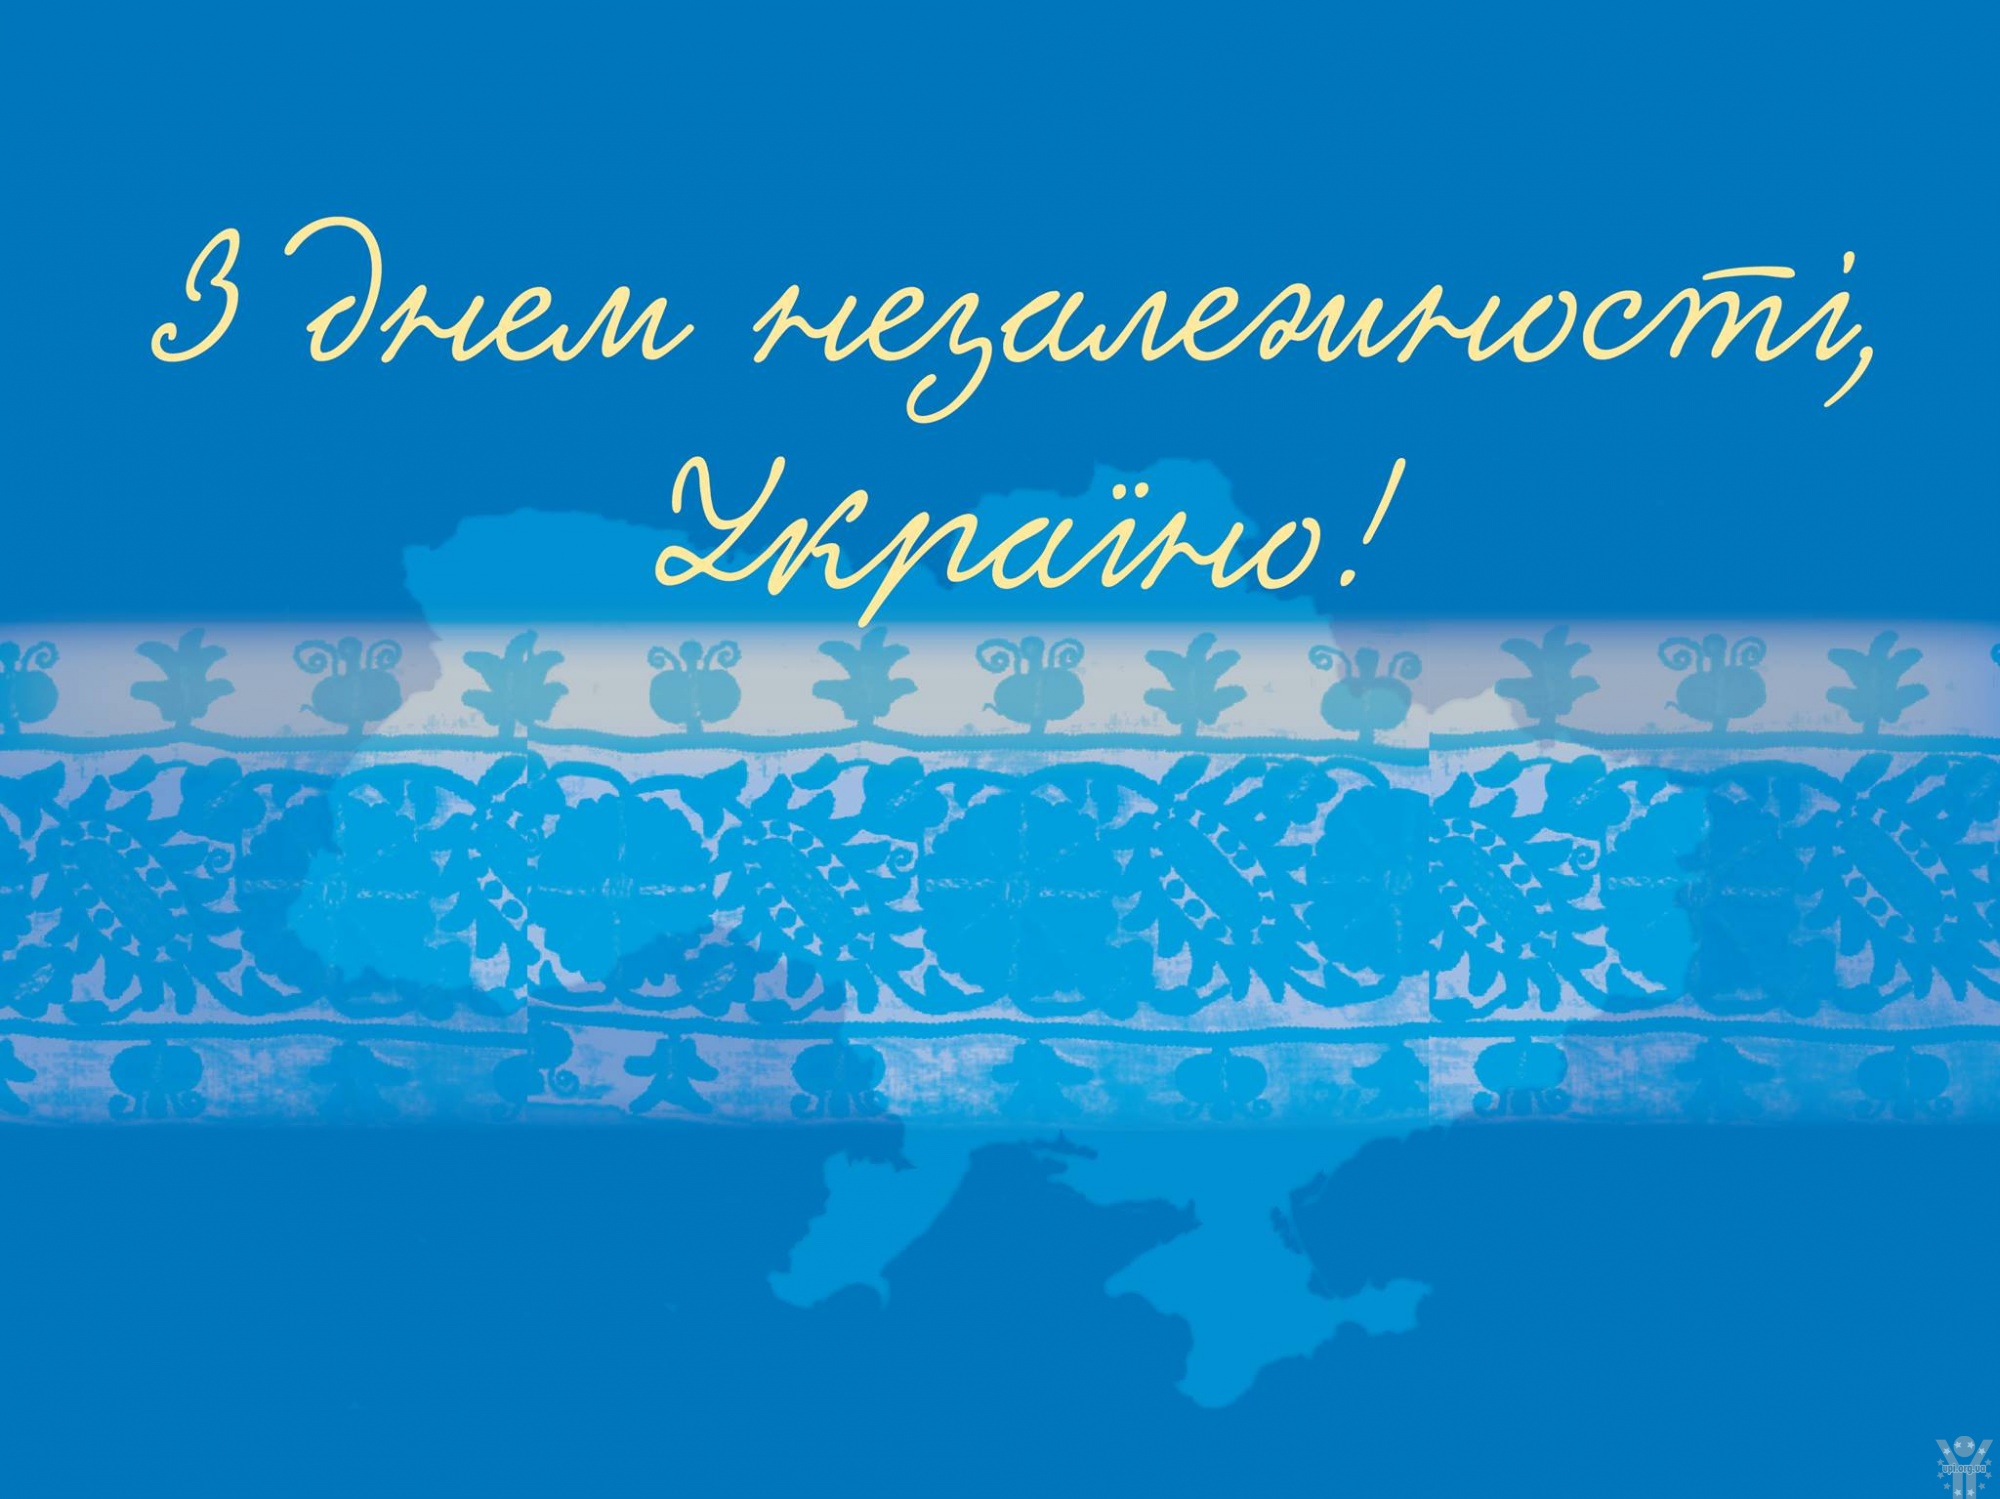 100-річчя відродження Української державності